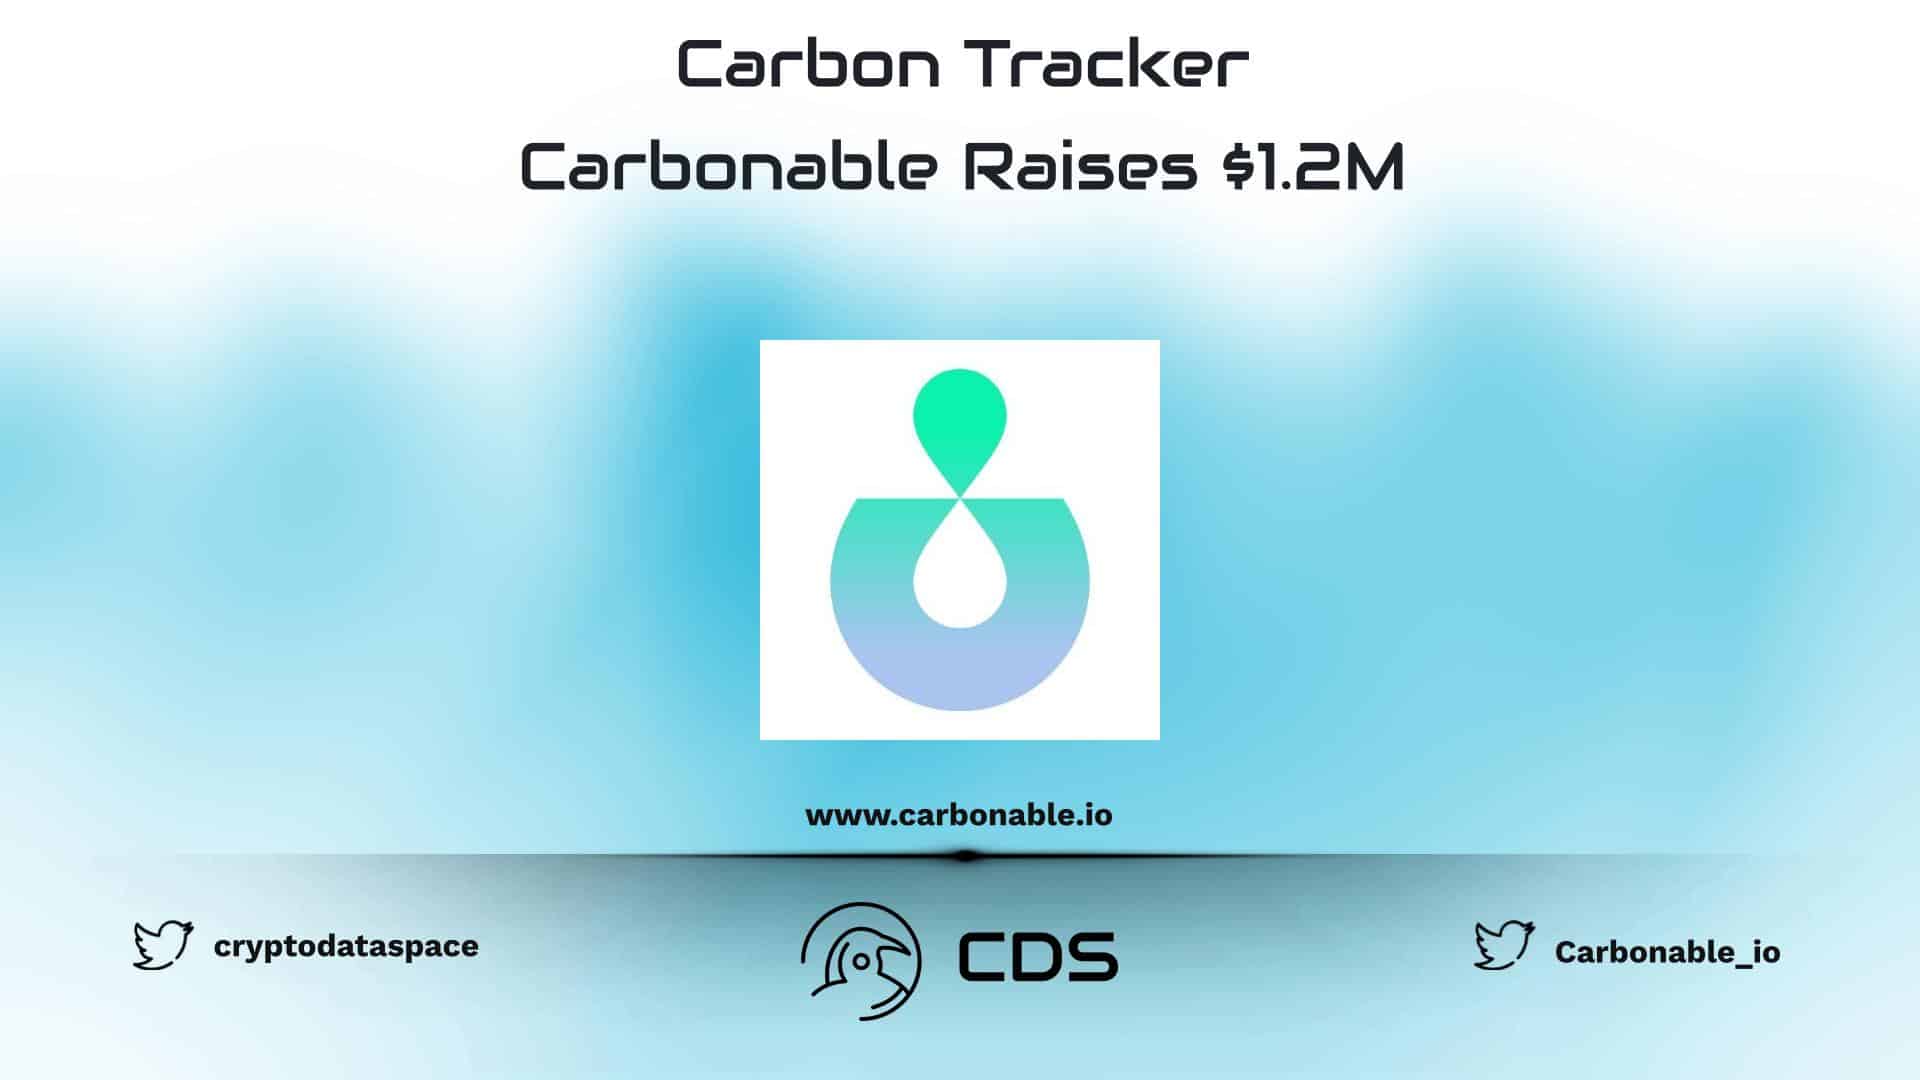 Carbon Tracker Carbonable Raises $1.2M